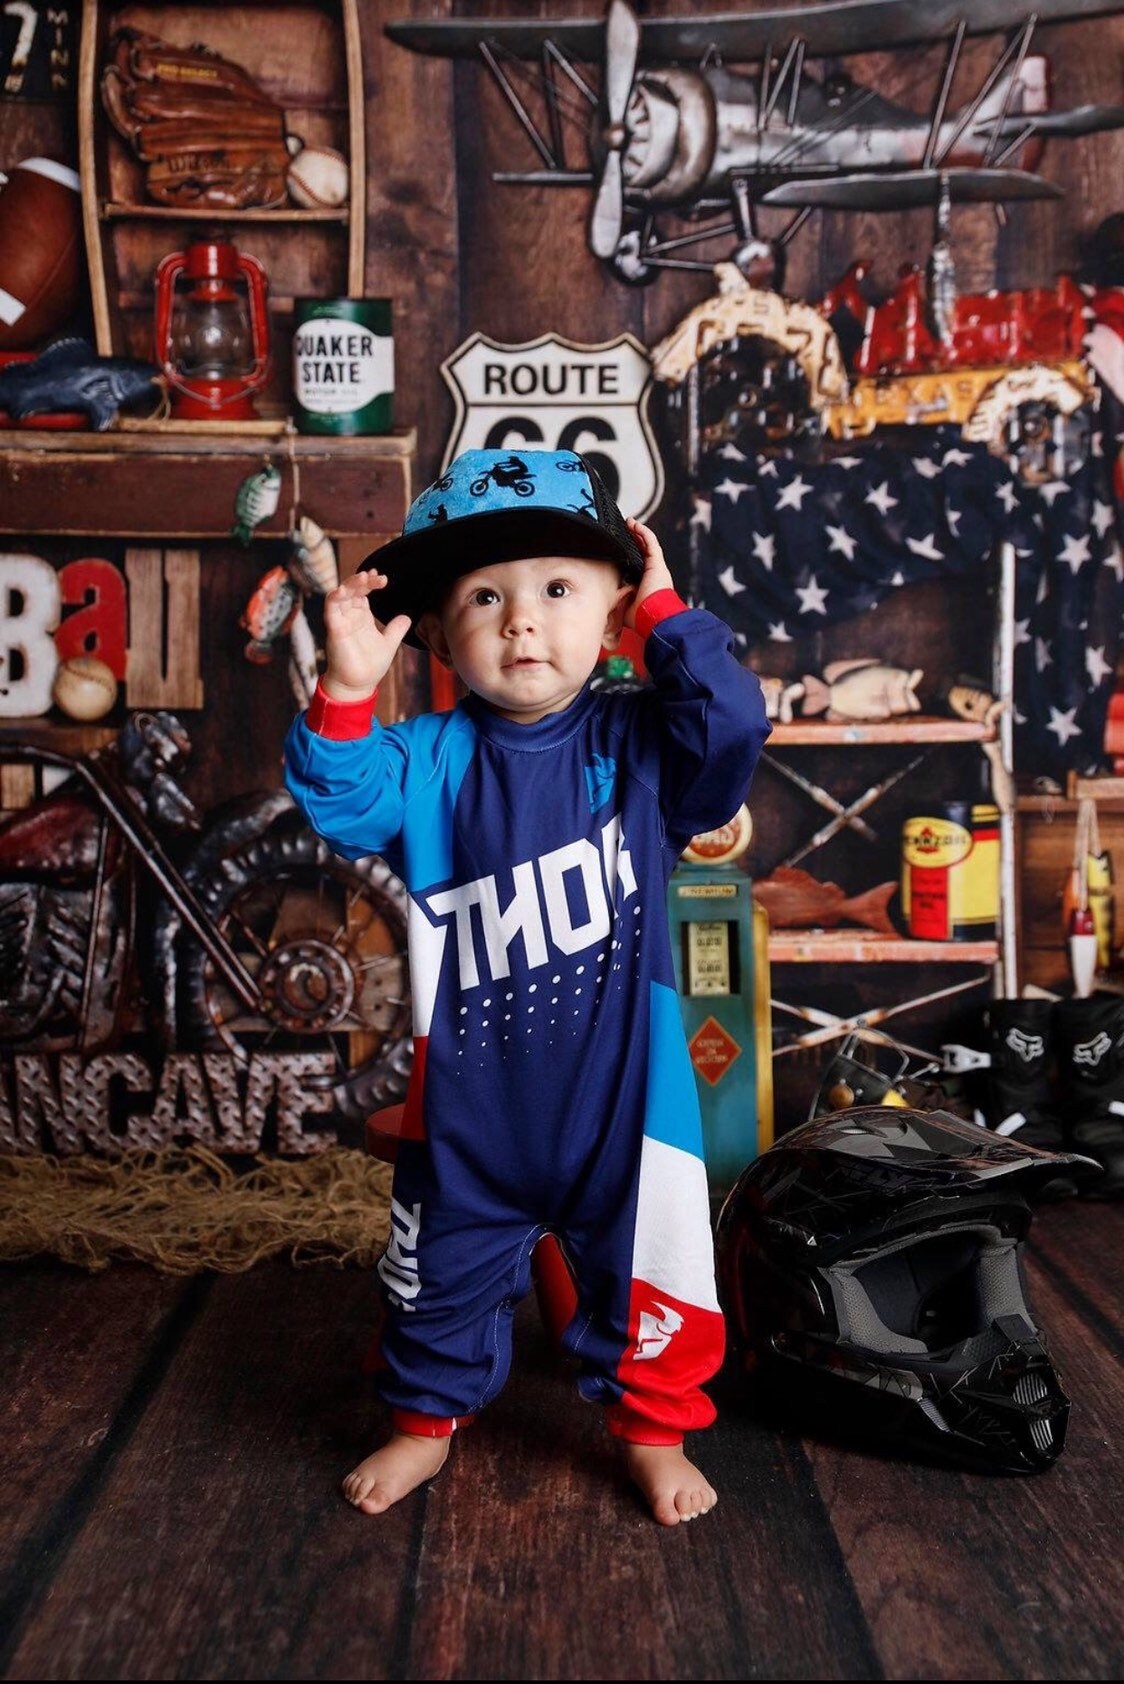 Blue Motocross Minky Front Trucker Hat Kids Trucker Hat 